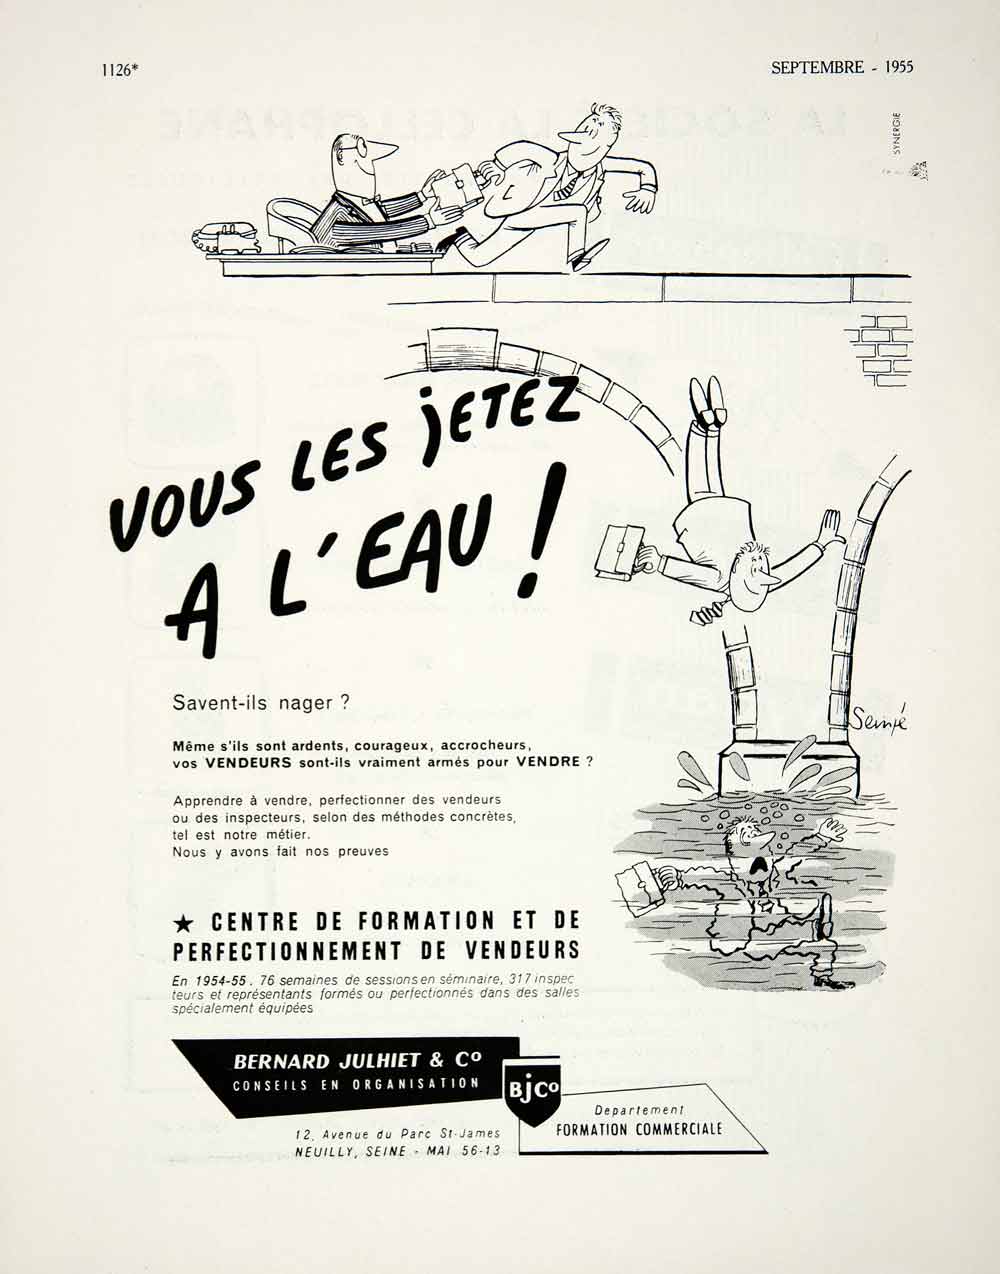 1955 Ad Bernard Julhiet Neuilly Seine Avenue de Parc French Advertisement VEN2